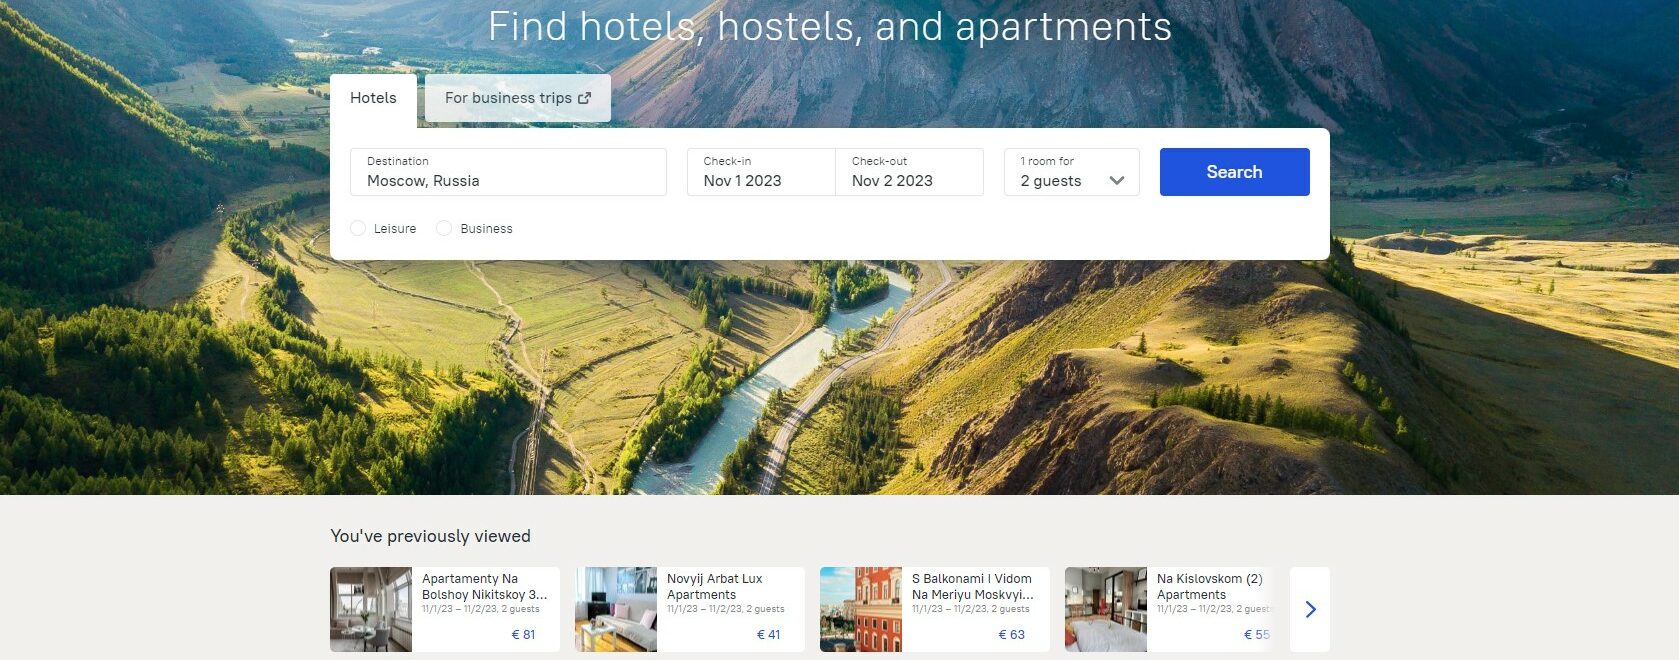 Ostrovok website - alternative to booking and airbnb - Ukraine war sanctions